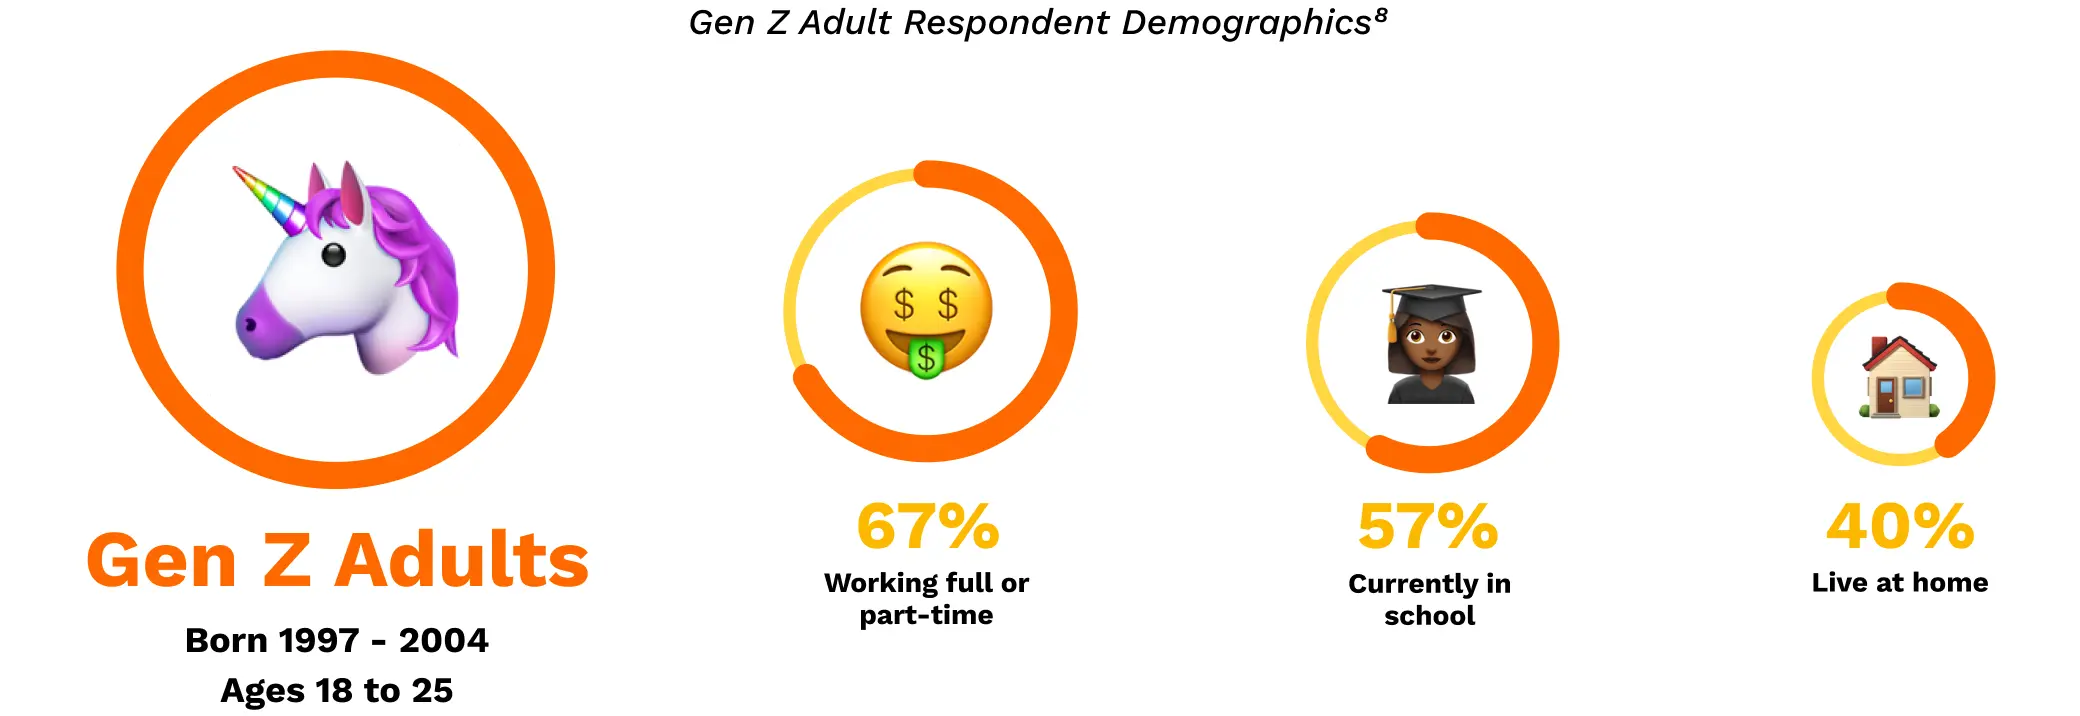 Gen Z Adult Respondent Demographics